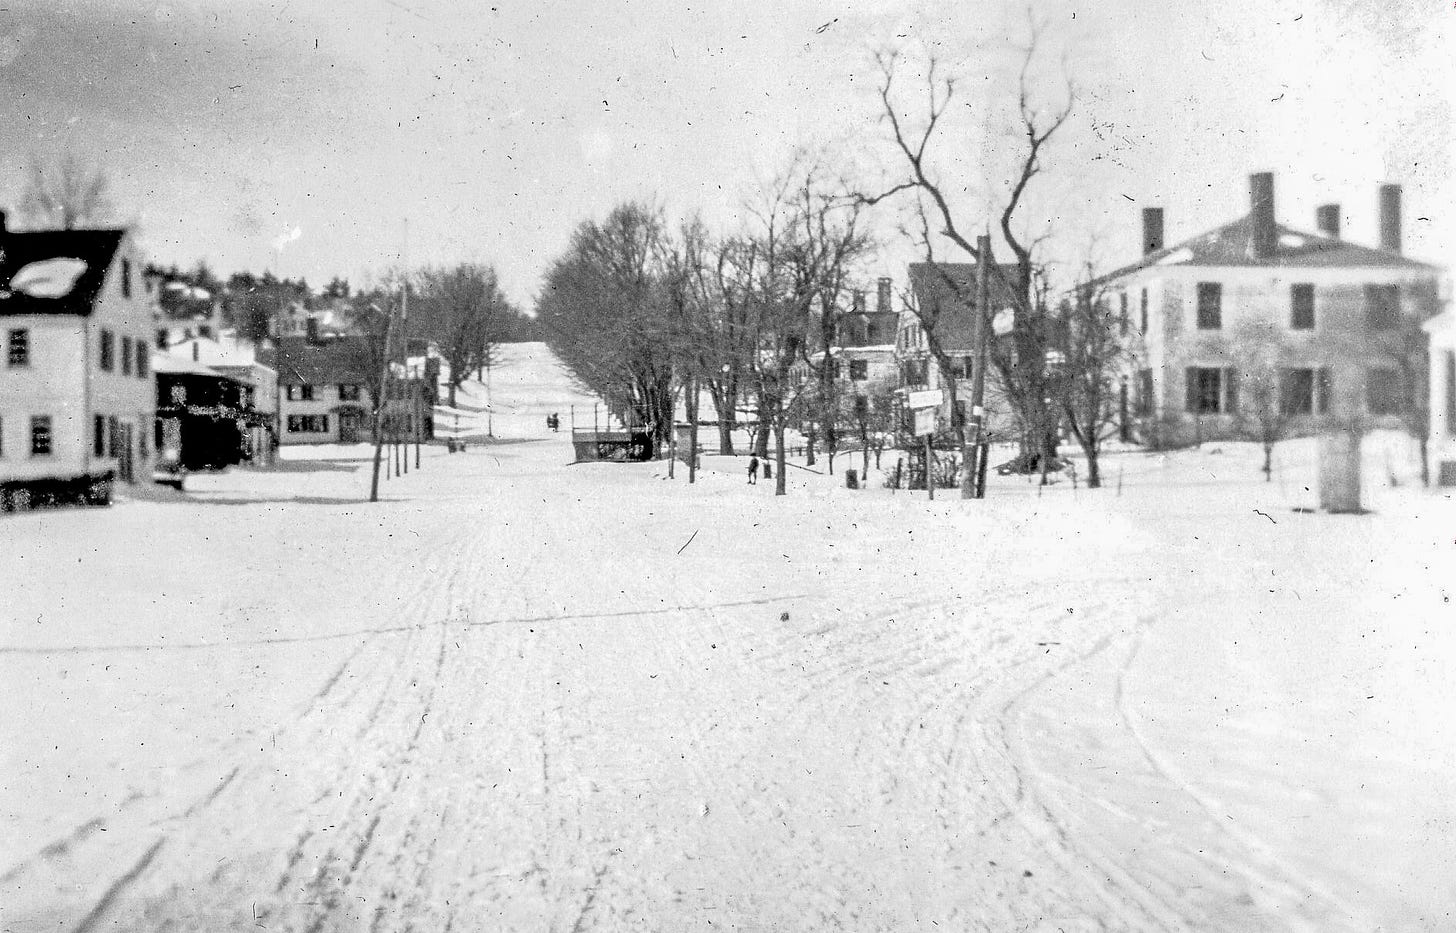 Turnpike Road in winter of 1907